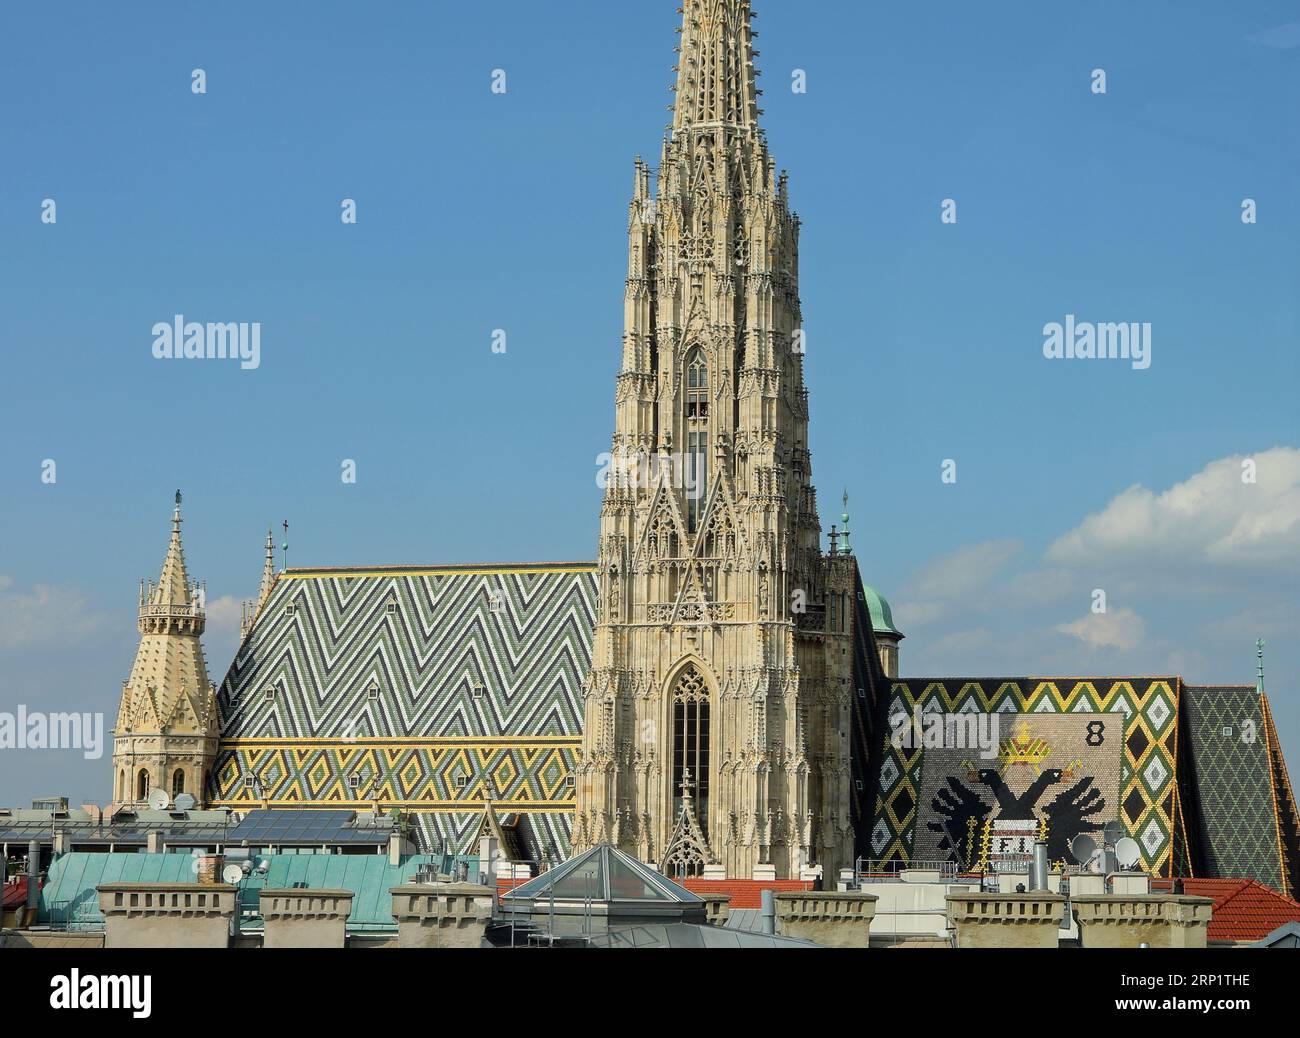 Glockenturm und Dach des Stephansdoms in Wien in Österreich und Doppeladler-Kaiseremblem mit dem Habsburg-Lothringen-Wappen Stockfoto